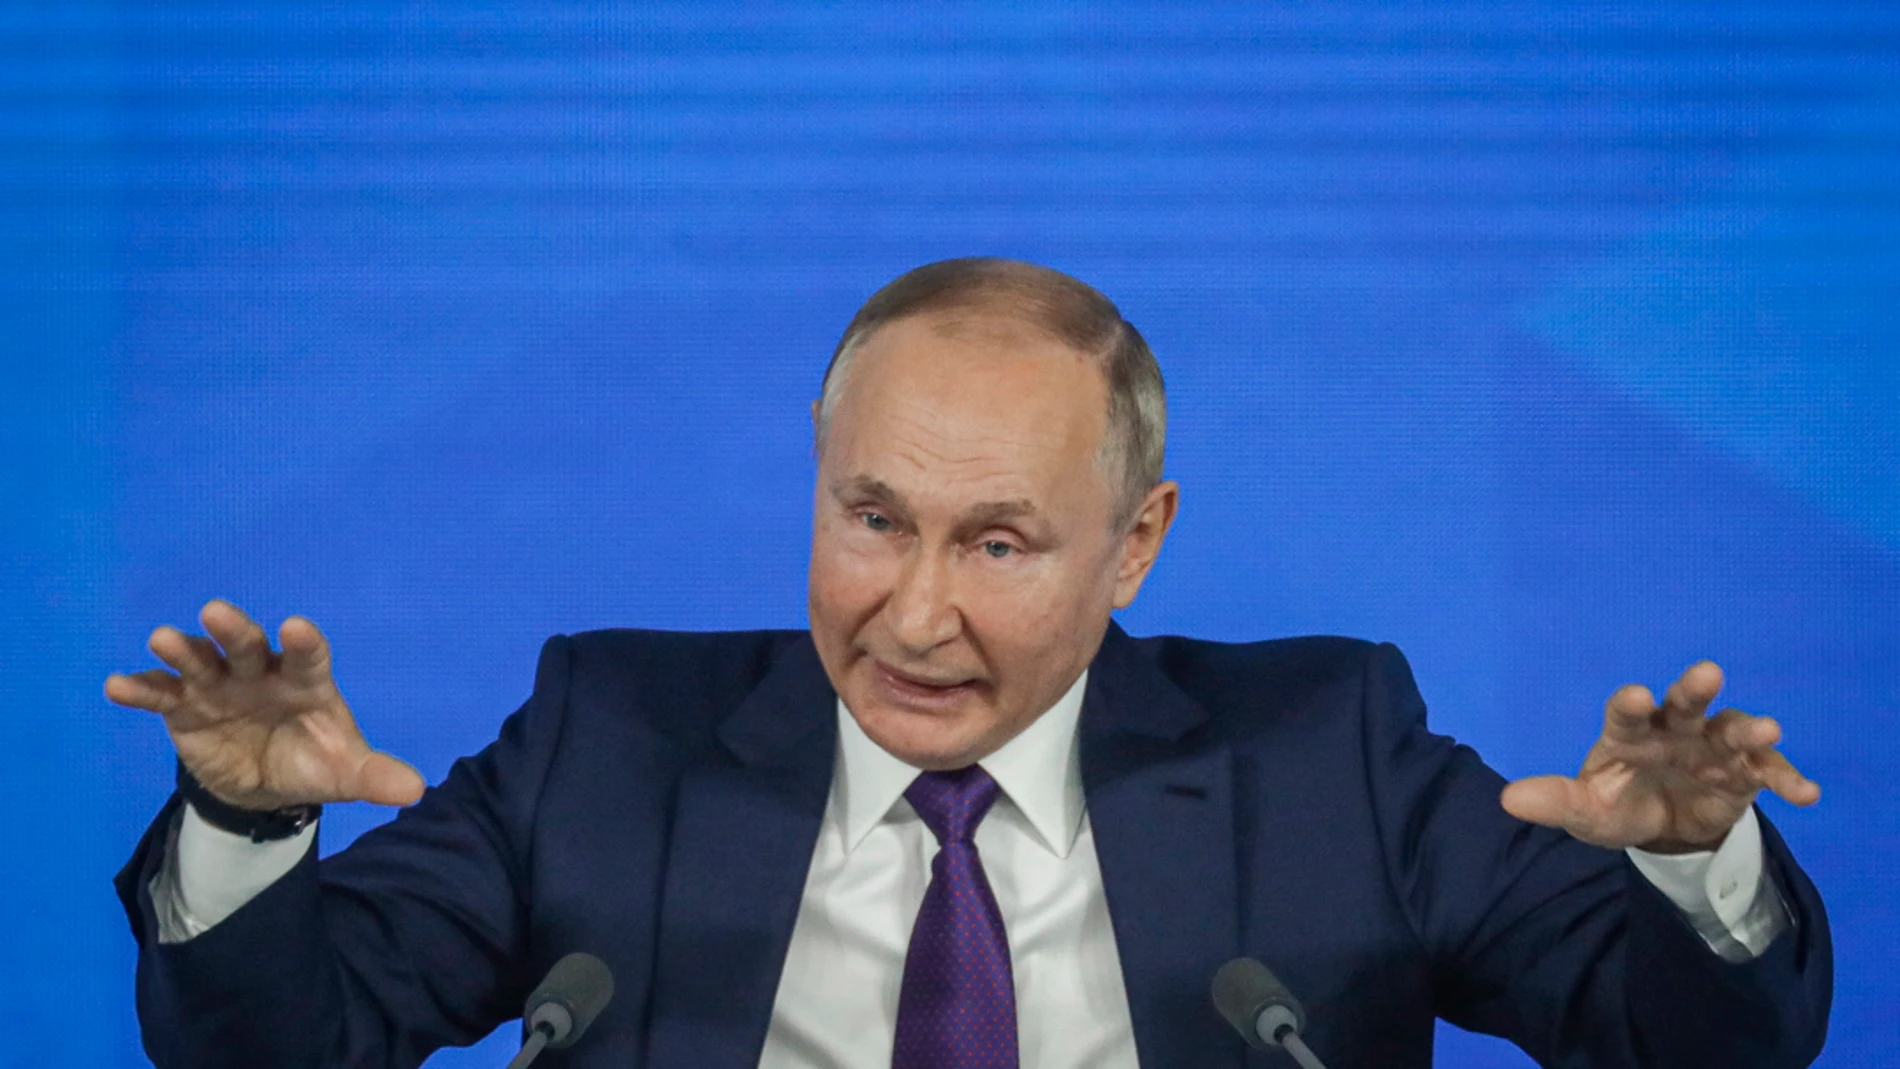 Vladimir Putin durante uno de sus discursos más recientes